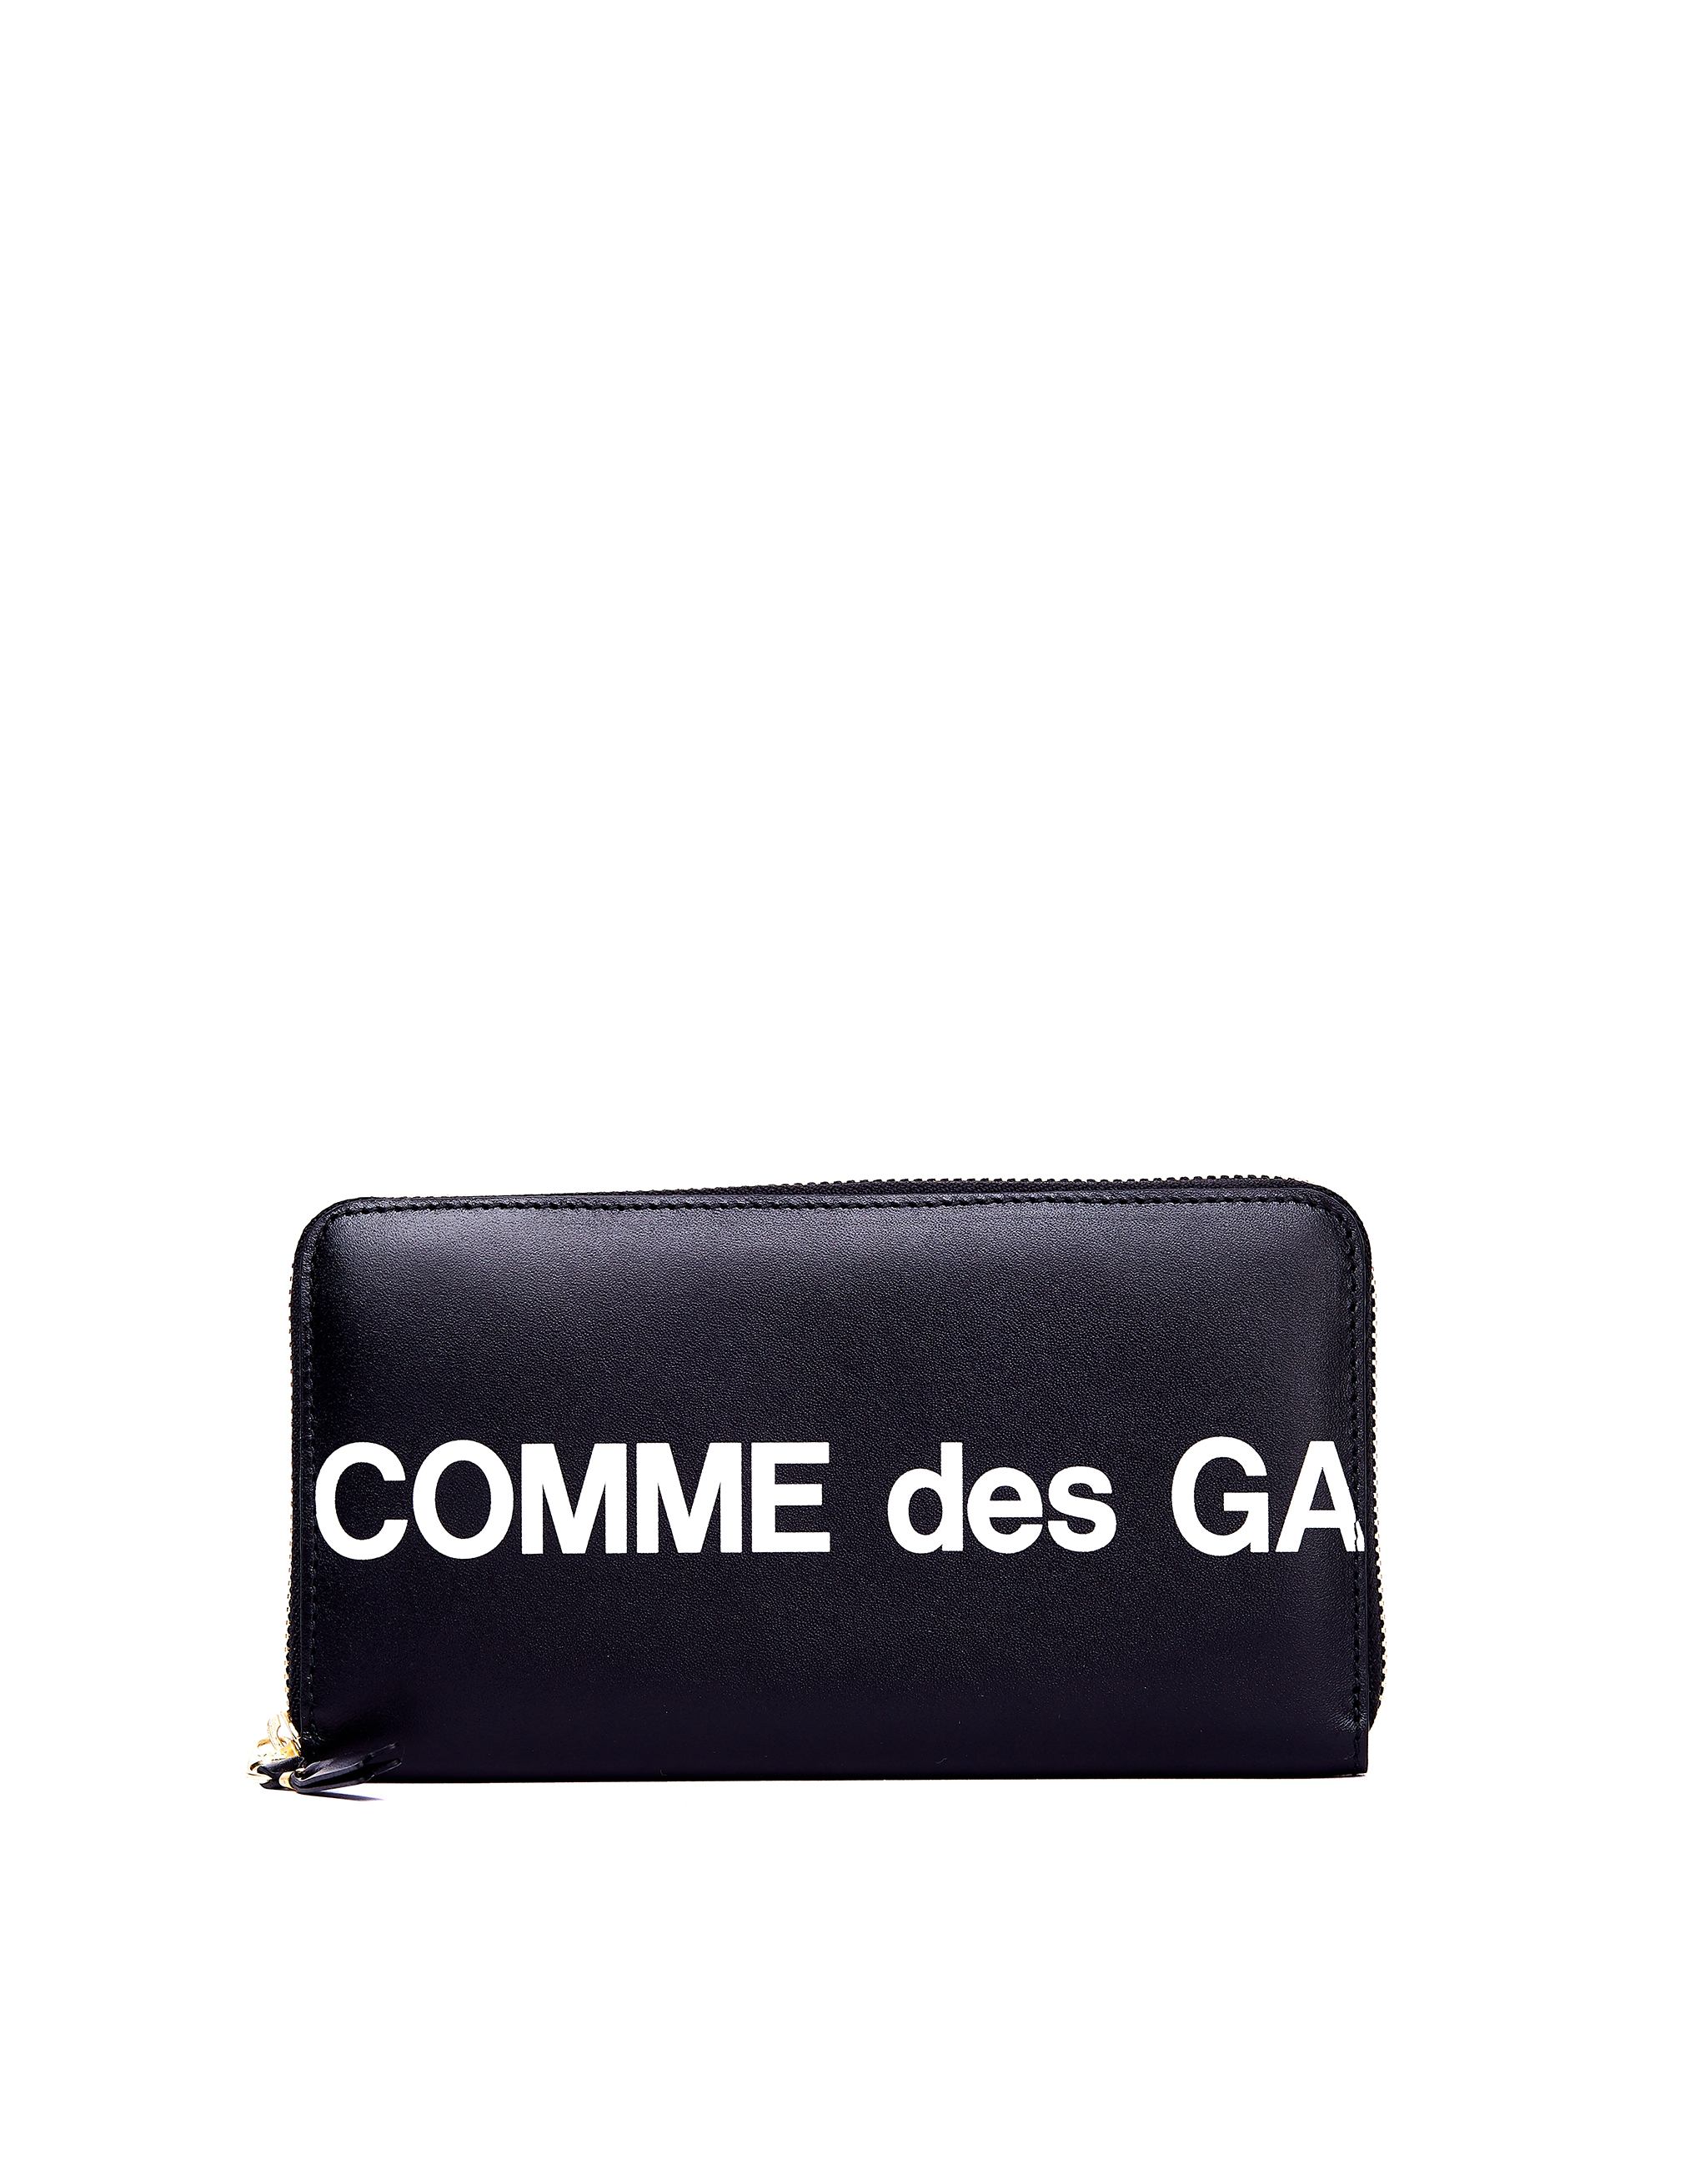 Черный кожаный кошелек с логотипом Comme des Garcons Wallets SA0111HL/blk, размер One Size